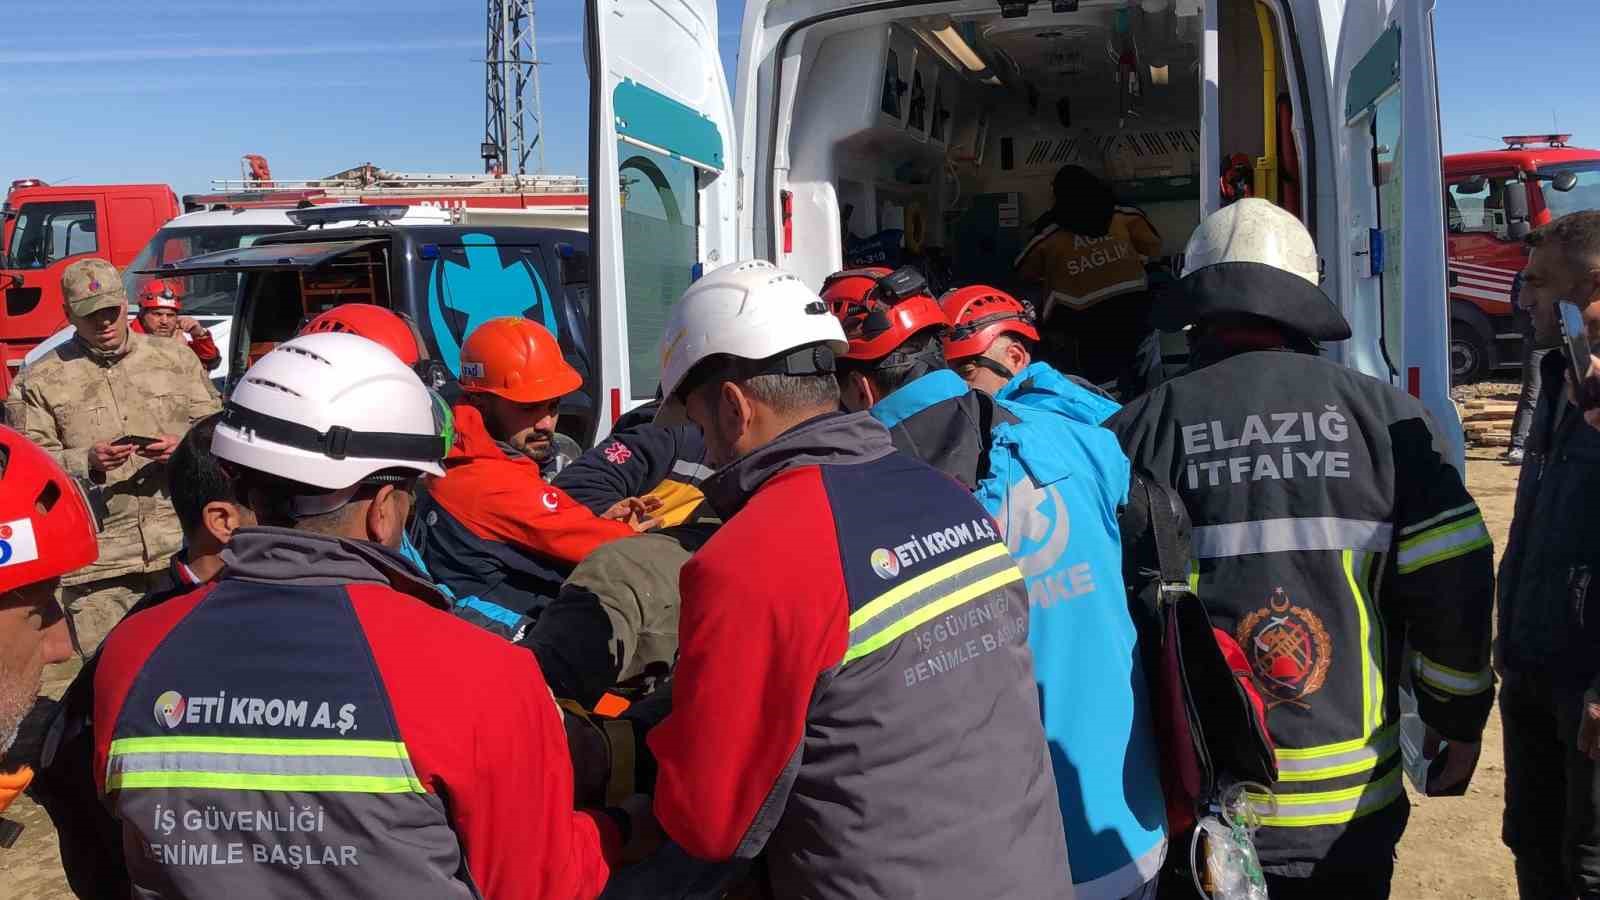 Elazığ’da maden ocağında göçük: 2 işçi kurtarıldı, 2 işçi göçük altında
